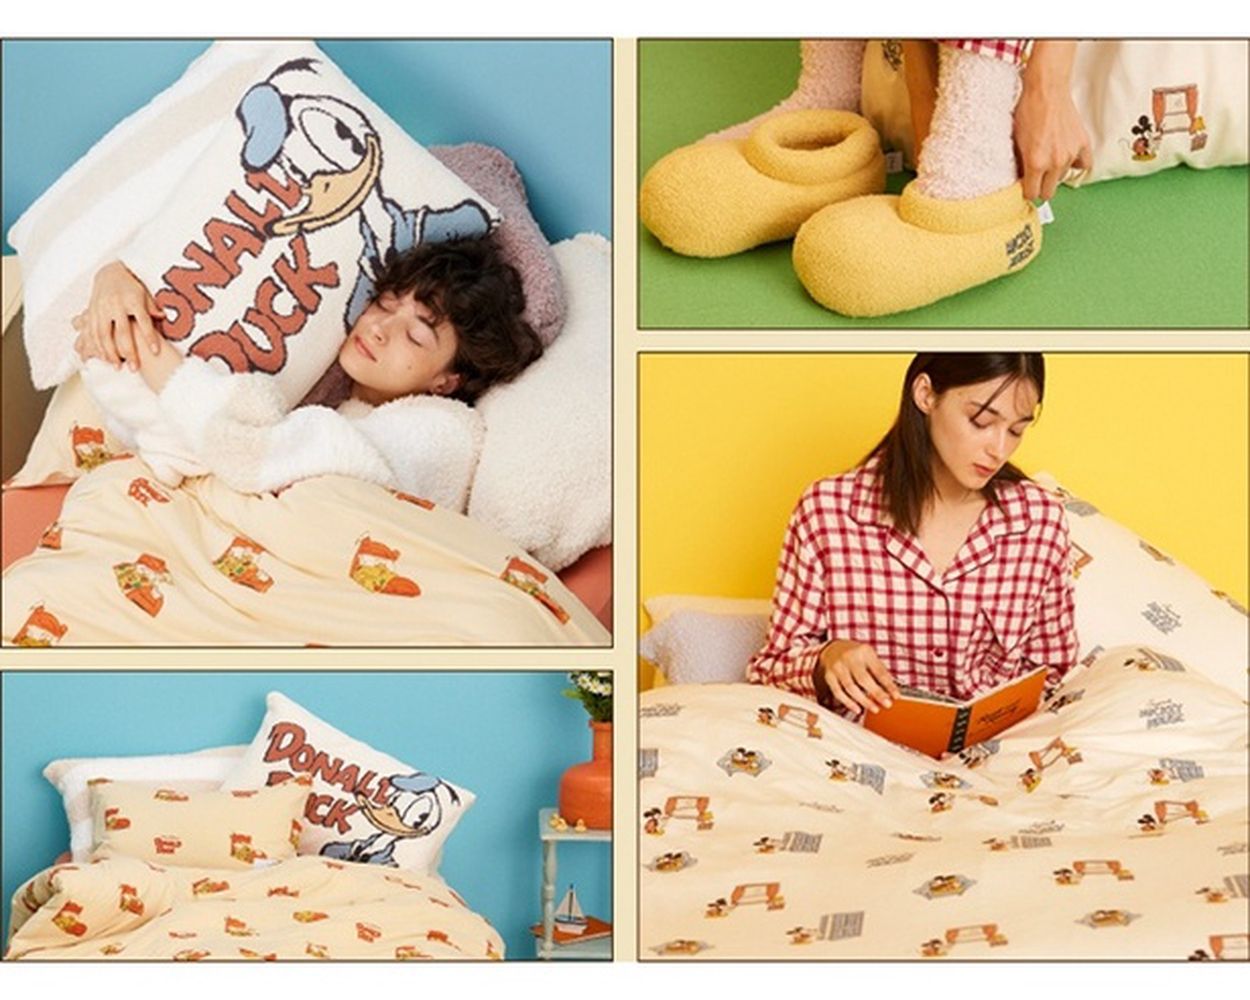 ジェラピケの寝具ラインから「ミッキー&ドナルド」コレクションが発売